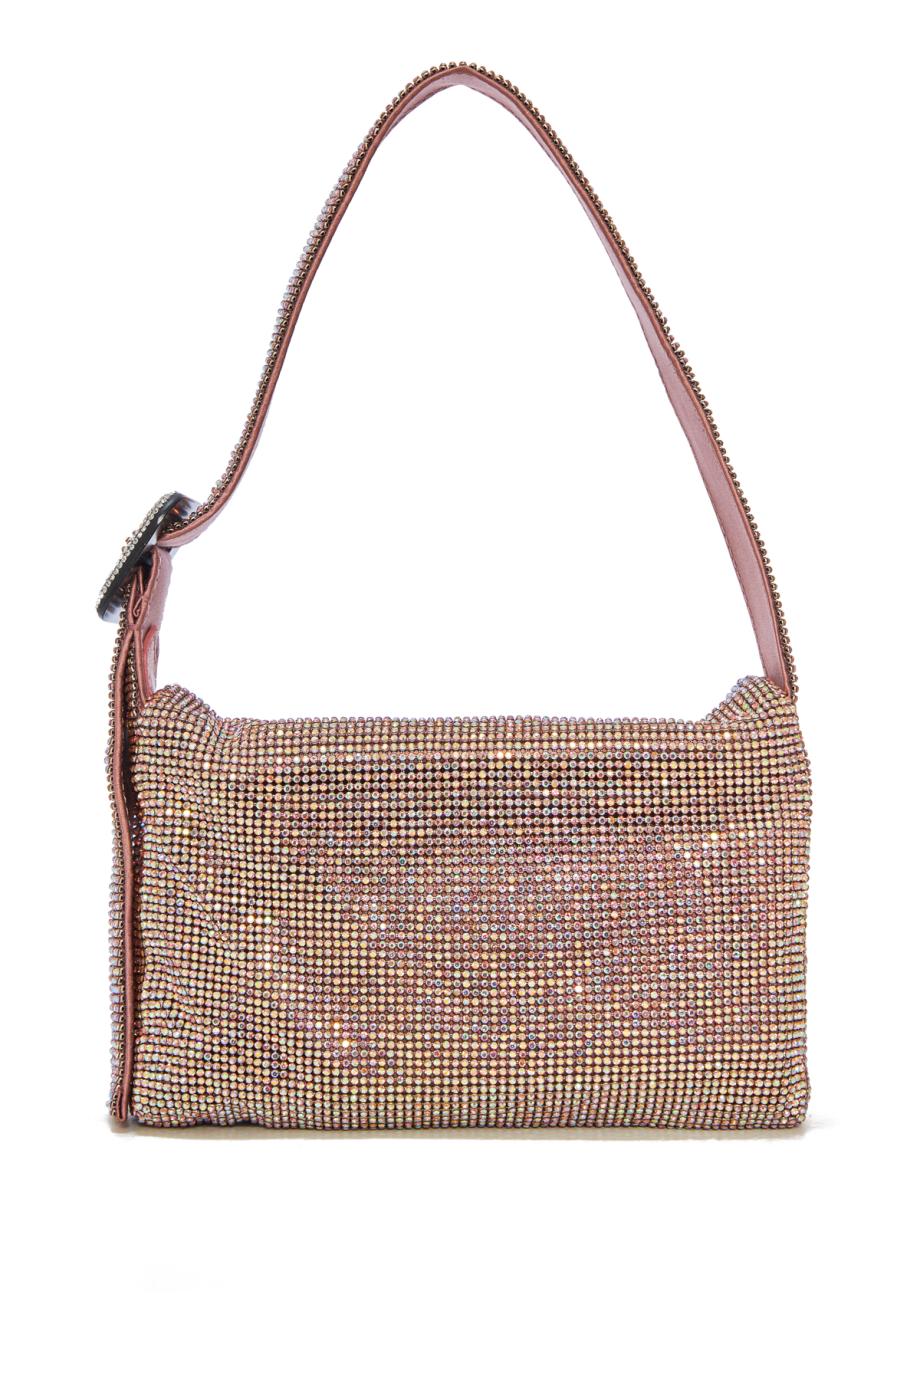 Vitty La Mignon embellished shoulder bag